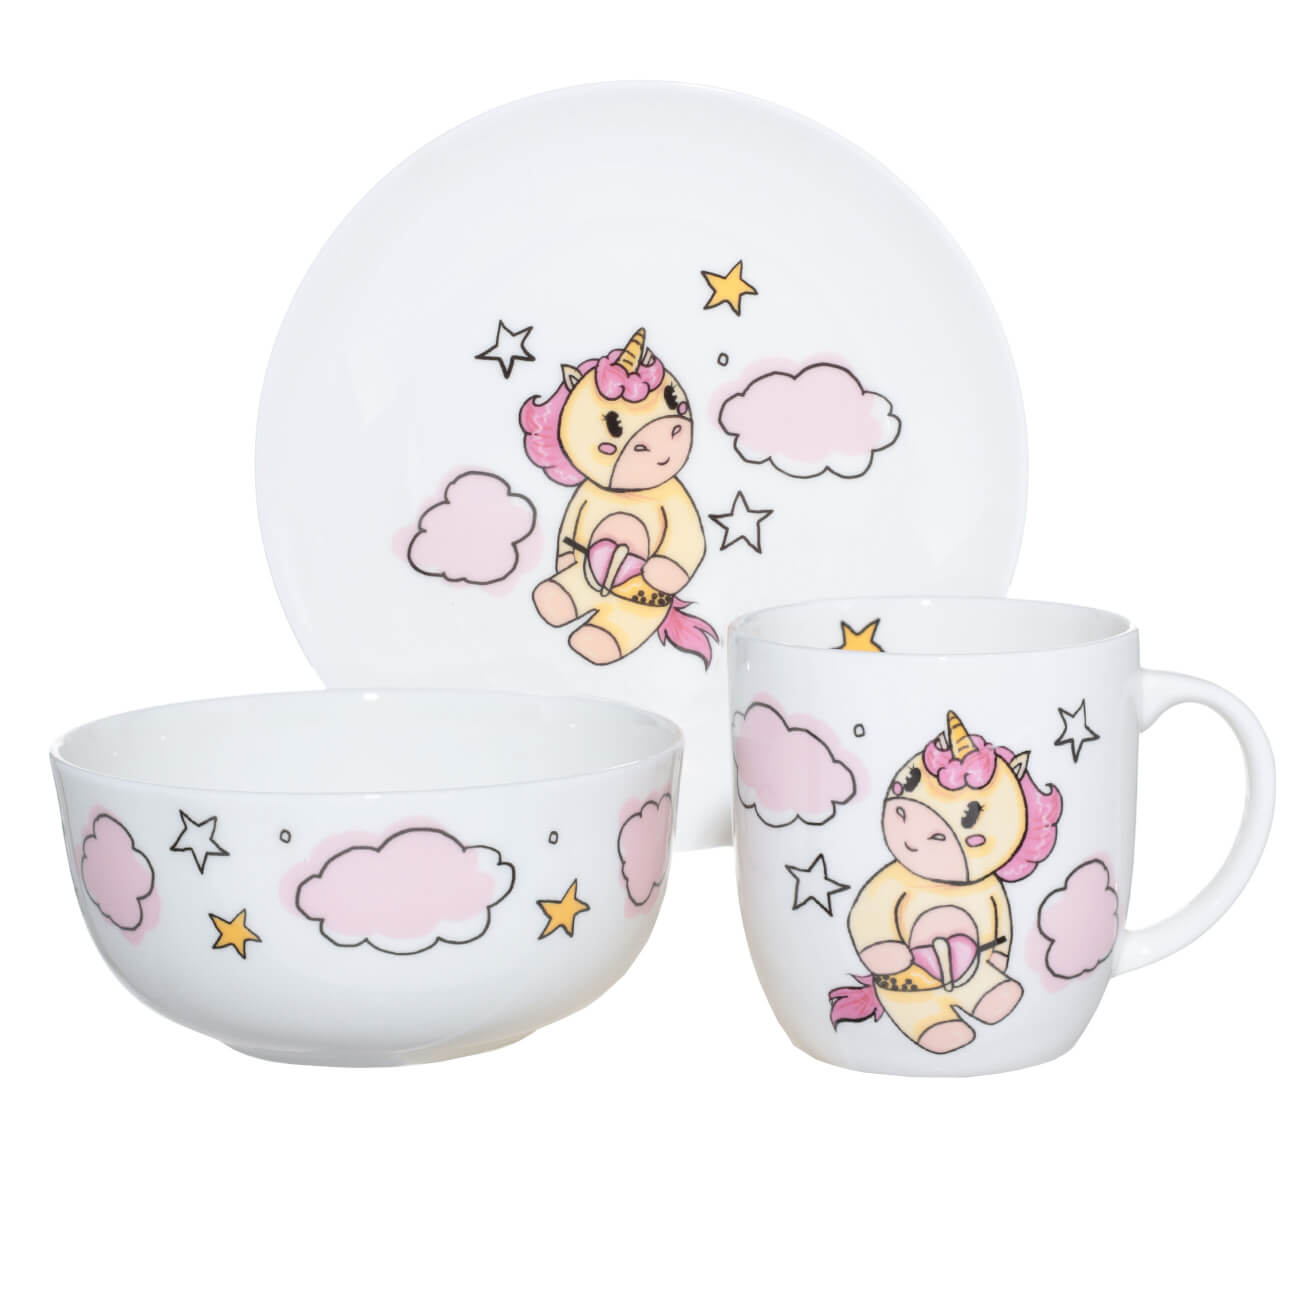 Набор посуды, детский, 3 пр, фарфор F, бело-розовый, Единорог в облаках, Unicorn набор посуды детский 5 пр бамбук розово мятный единорог unicorn